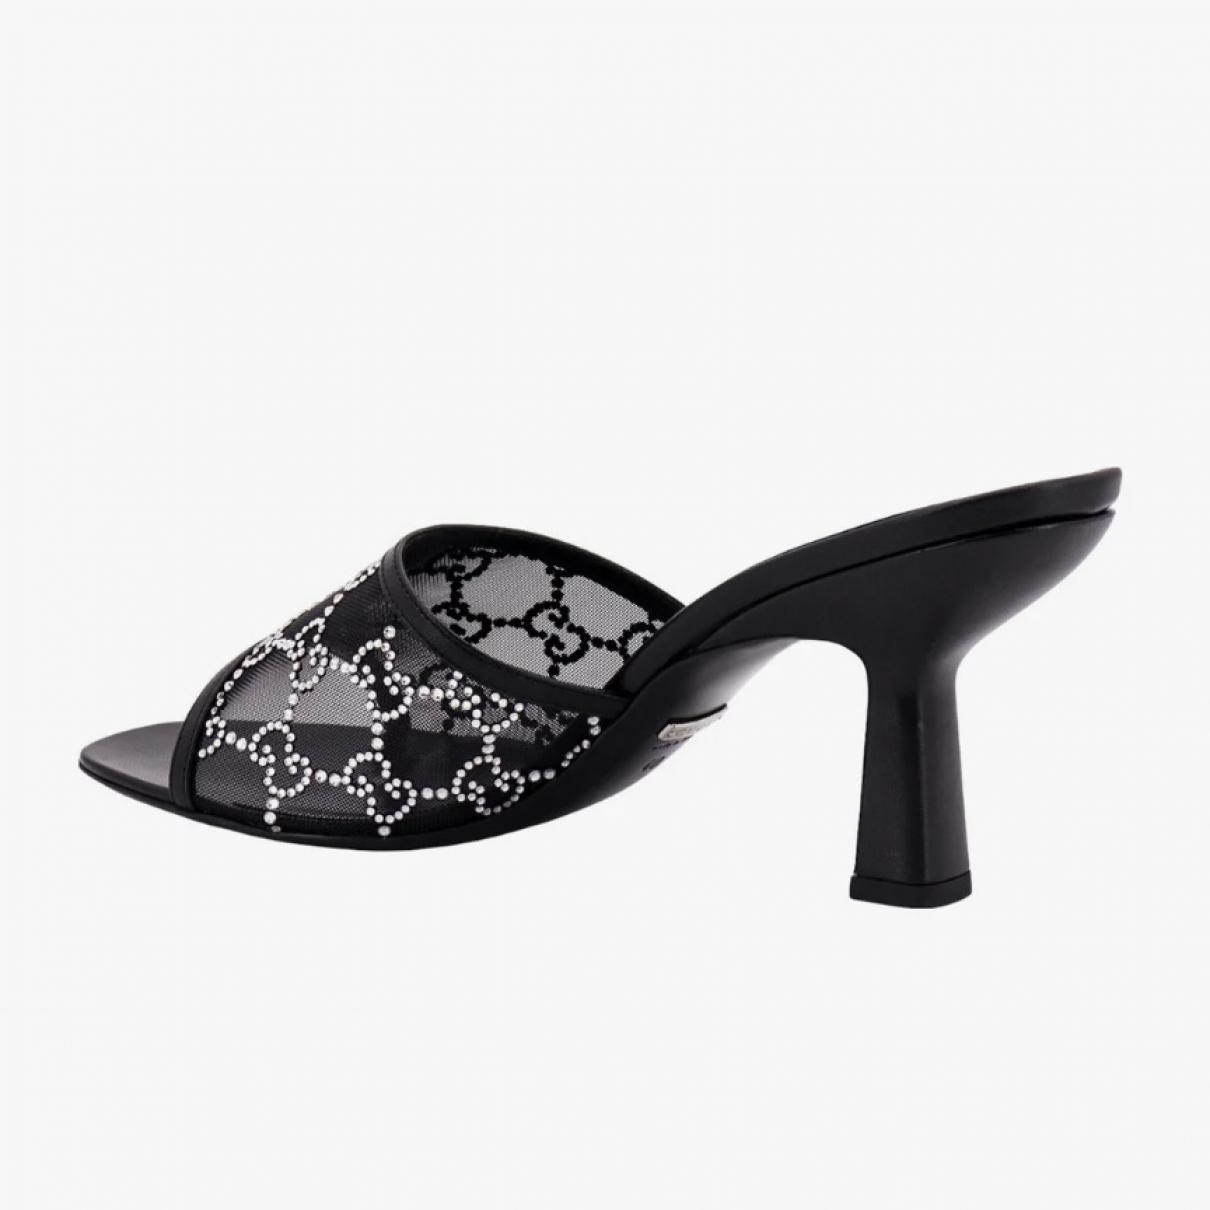 Leather heels - 4